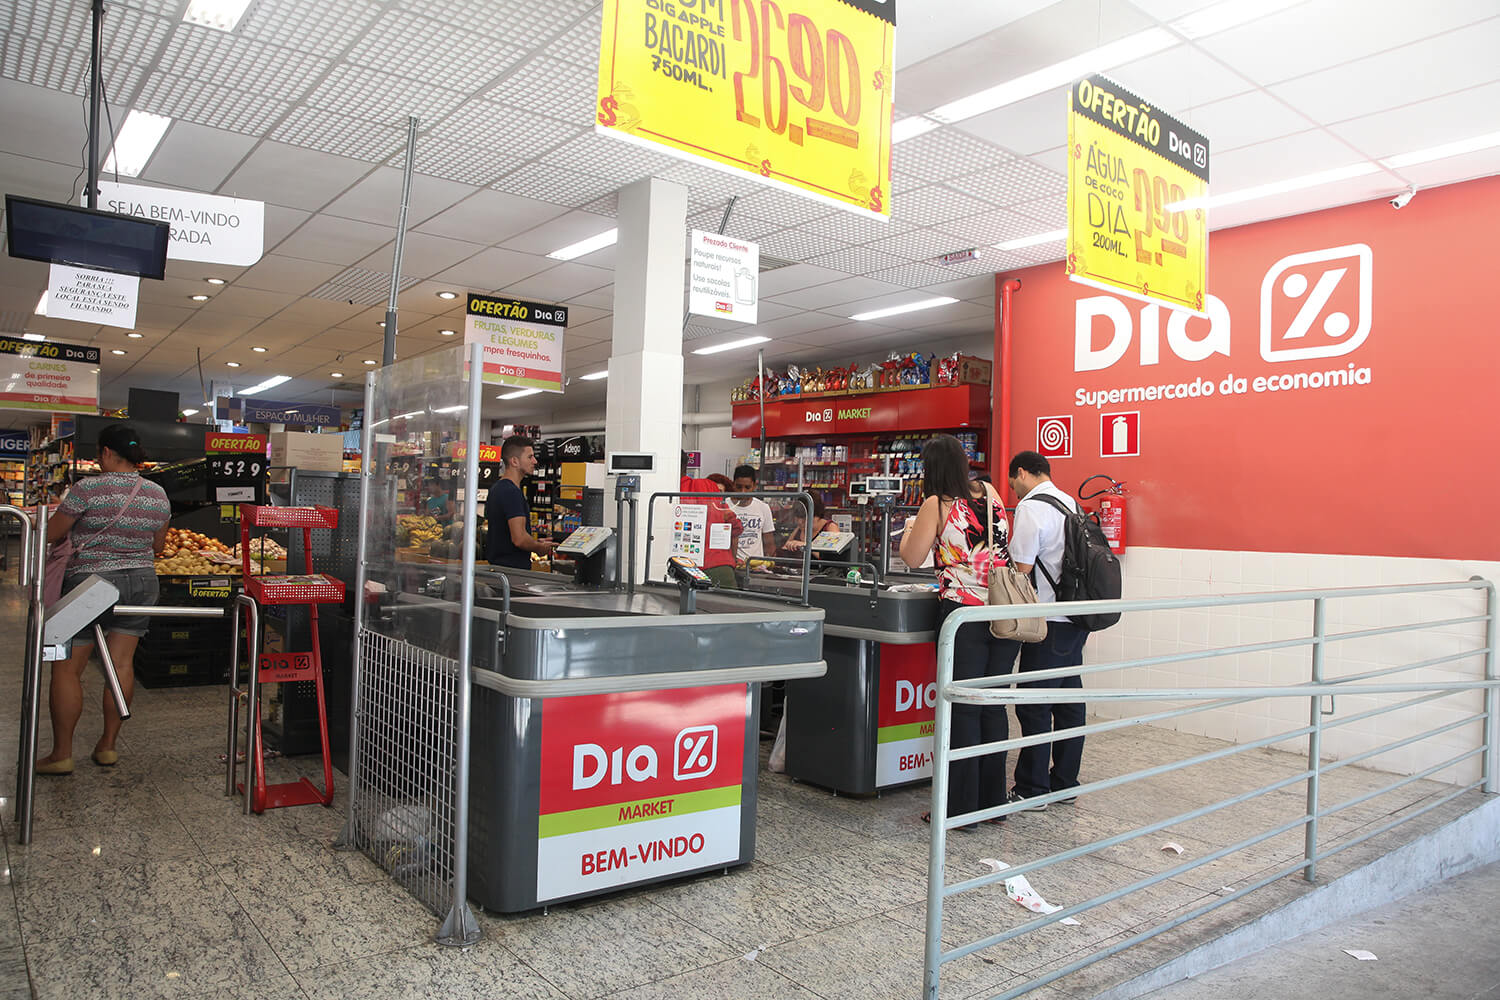 Supermercado Dia está recebendo currículo para Op. loja em Guarulhos